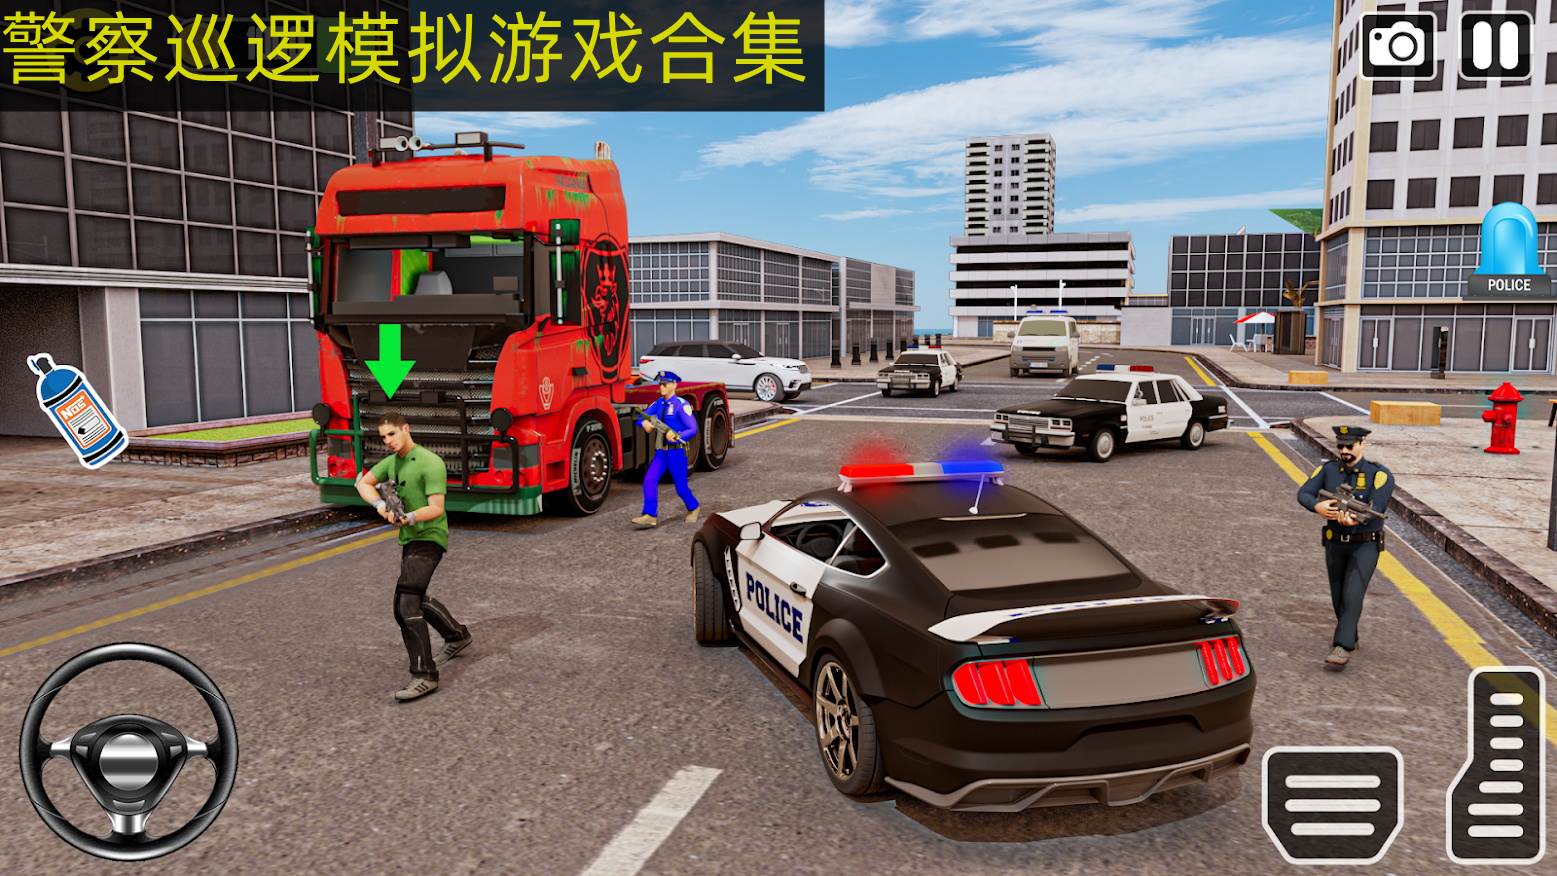 特警巡逻模拟游戏手机 警察巡逻模拟器下载排行排行